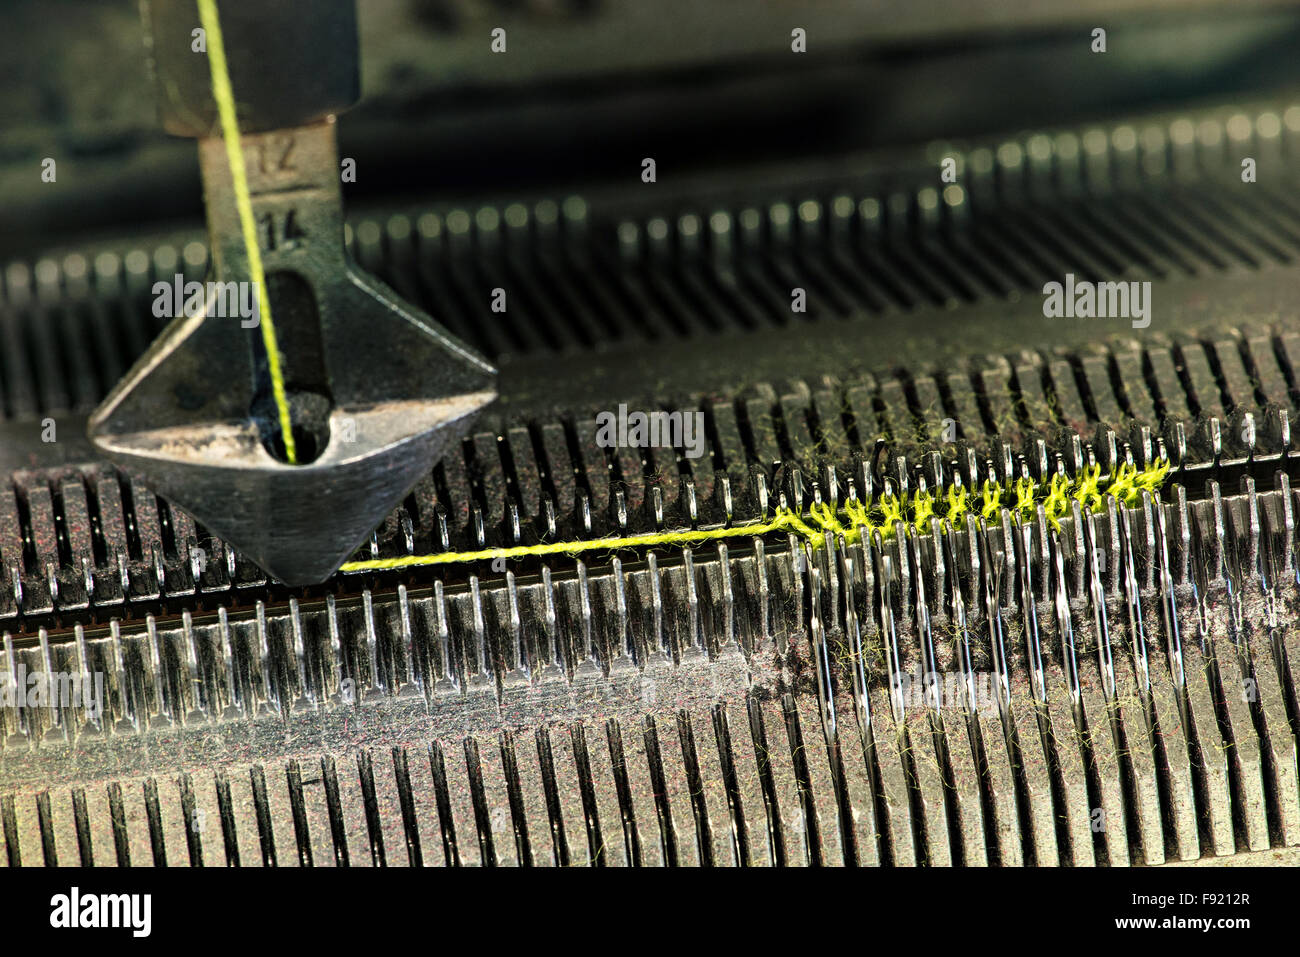 Détail de machine à tricoter travaillant dans un concept textile Banque D'Images